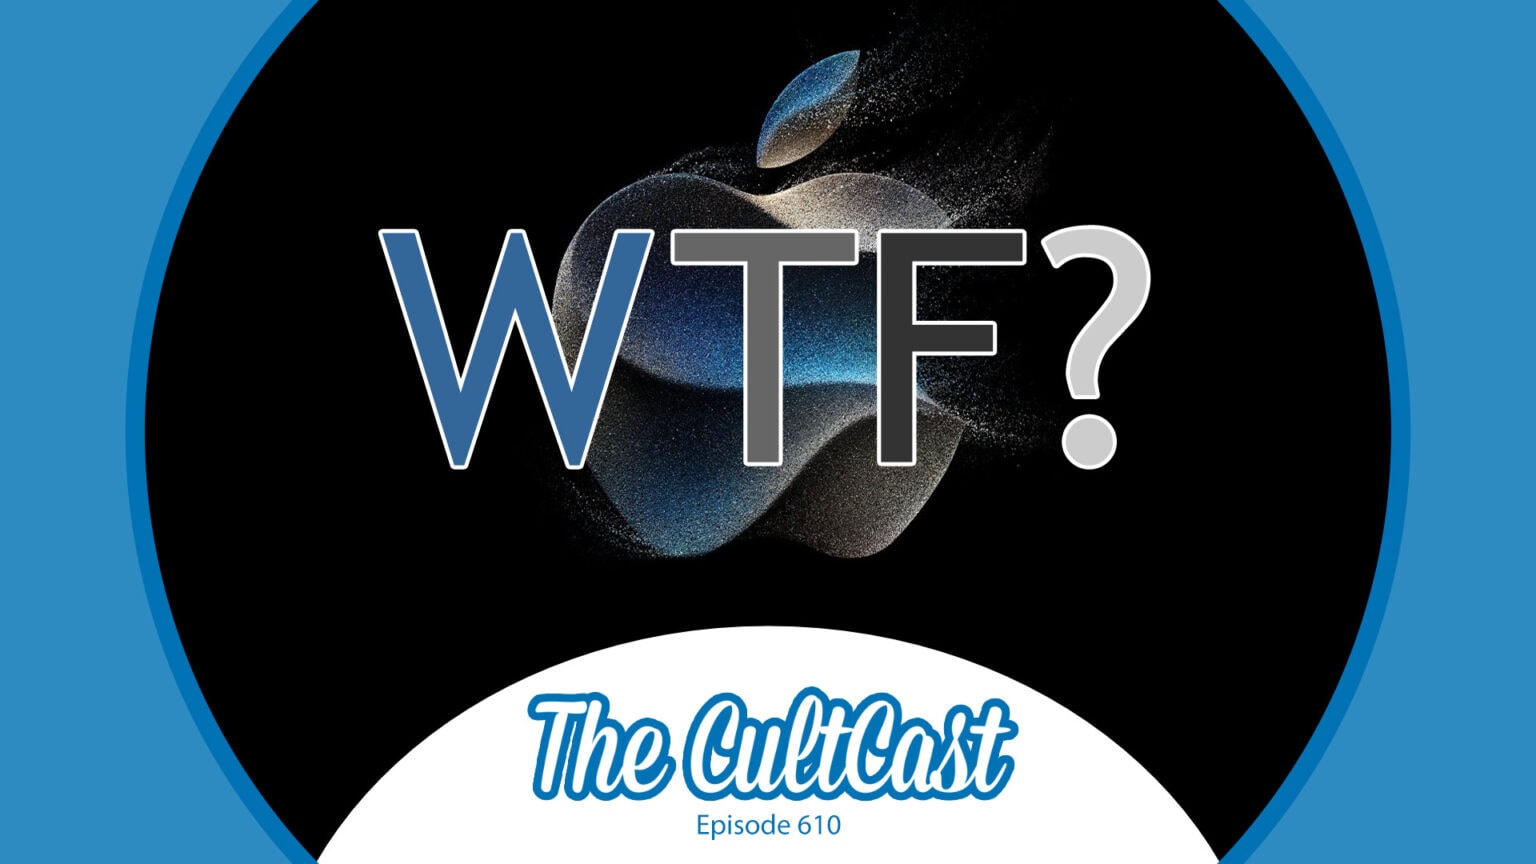 L’evento “Wonderlust” porterà iPhone degni di lussuria? [The CultCast]